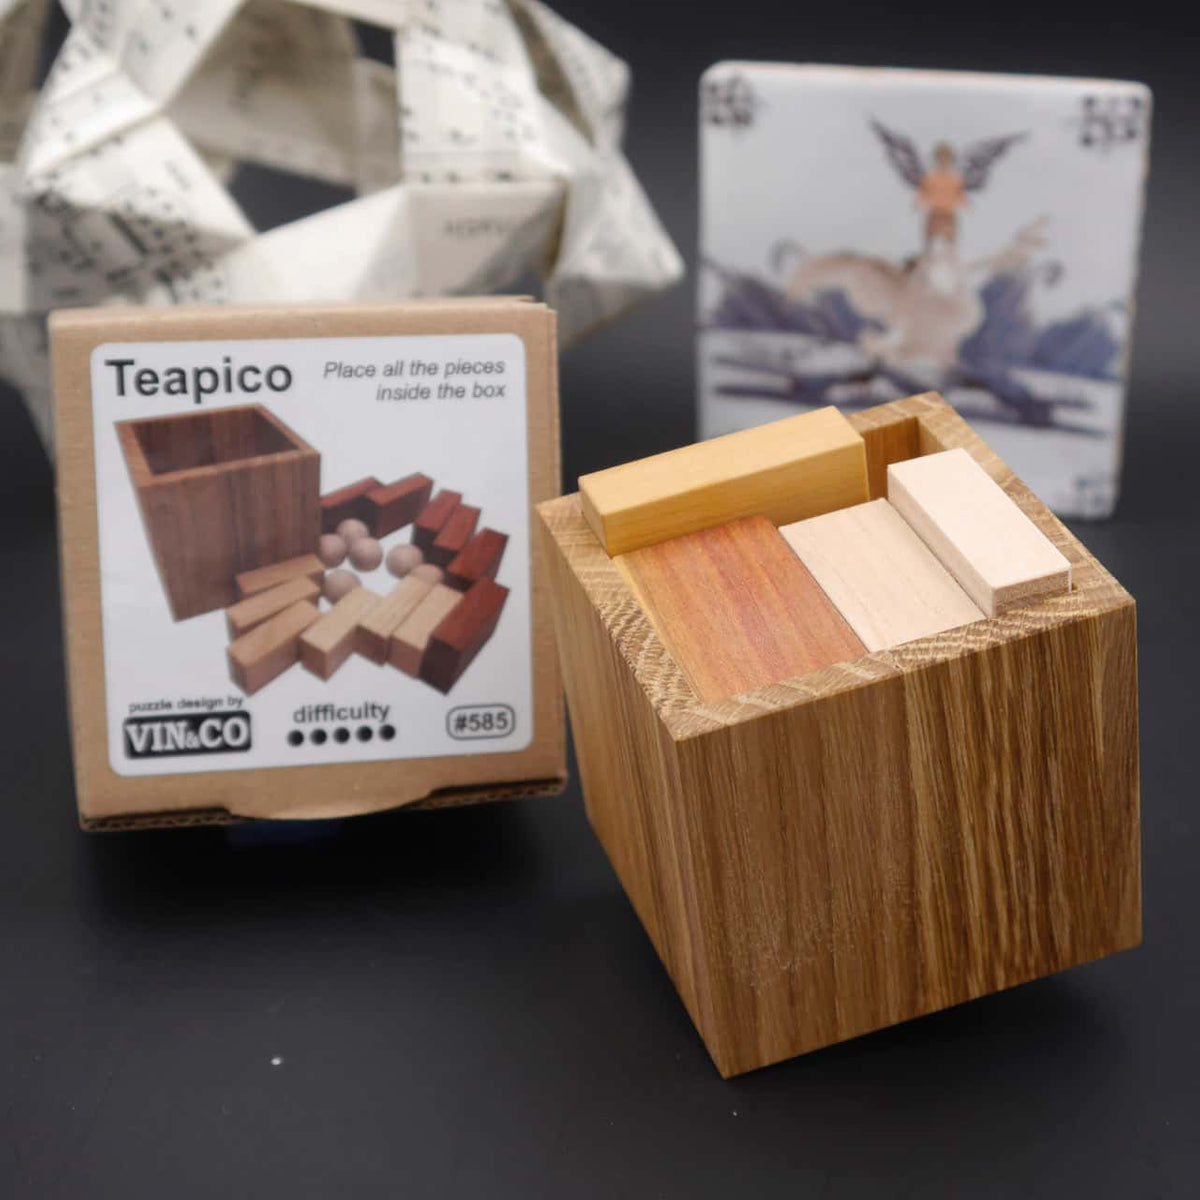 TEAPICO - sehr schwieriges Puzzle bestehend aus 18 Teilen